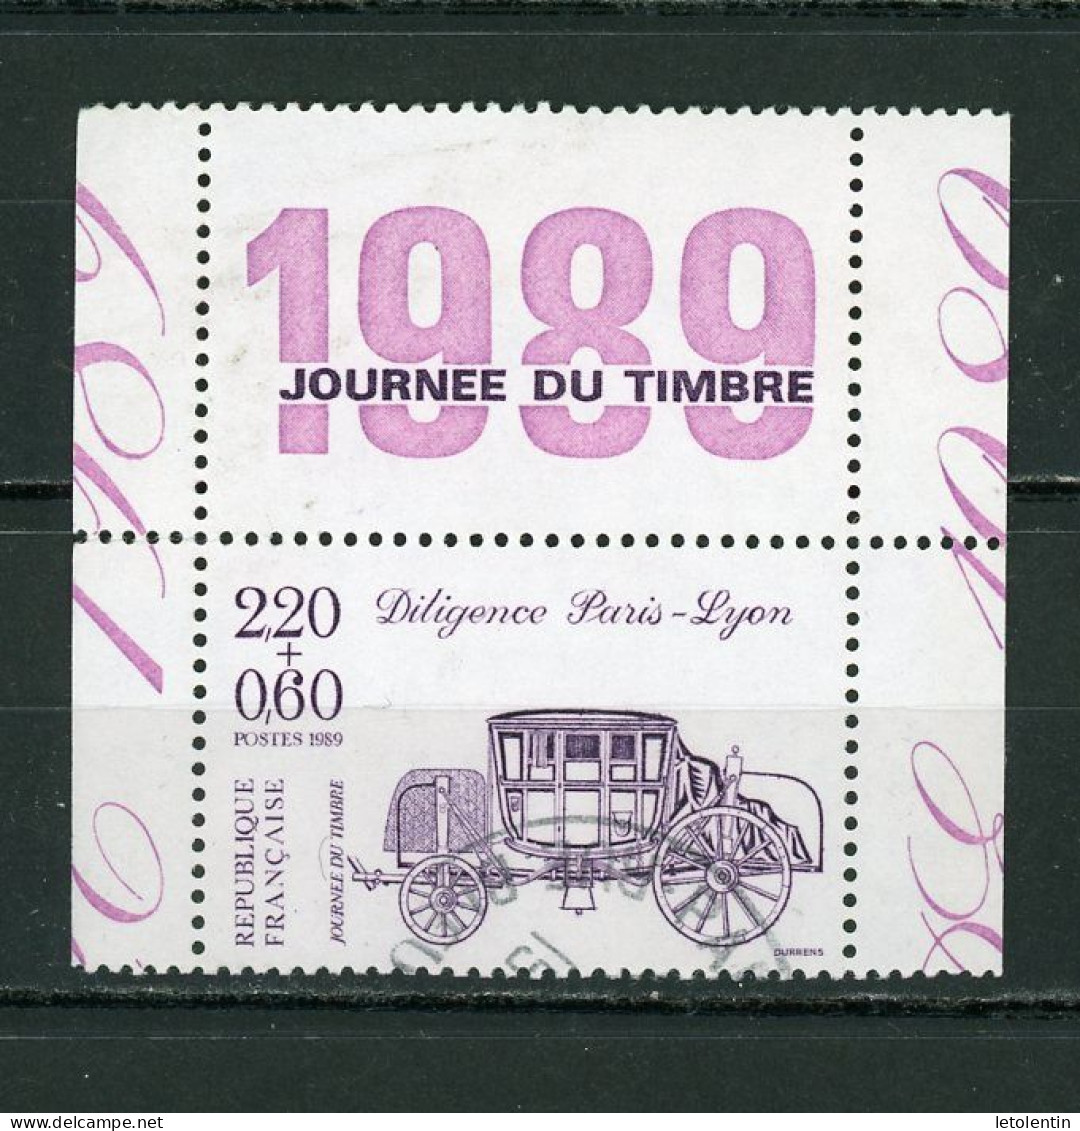 FRANCE - LA JOURNÉE DU TIMBRE 1989 -  N° Yvert 2578 Obli. DE CARNET AVEC VIGNETTE "JOURNÉE DU TIMBRE 1989" - Usados